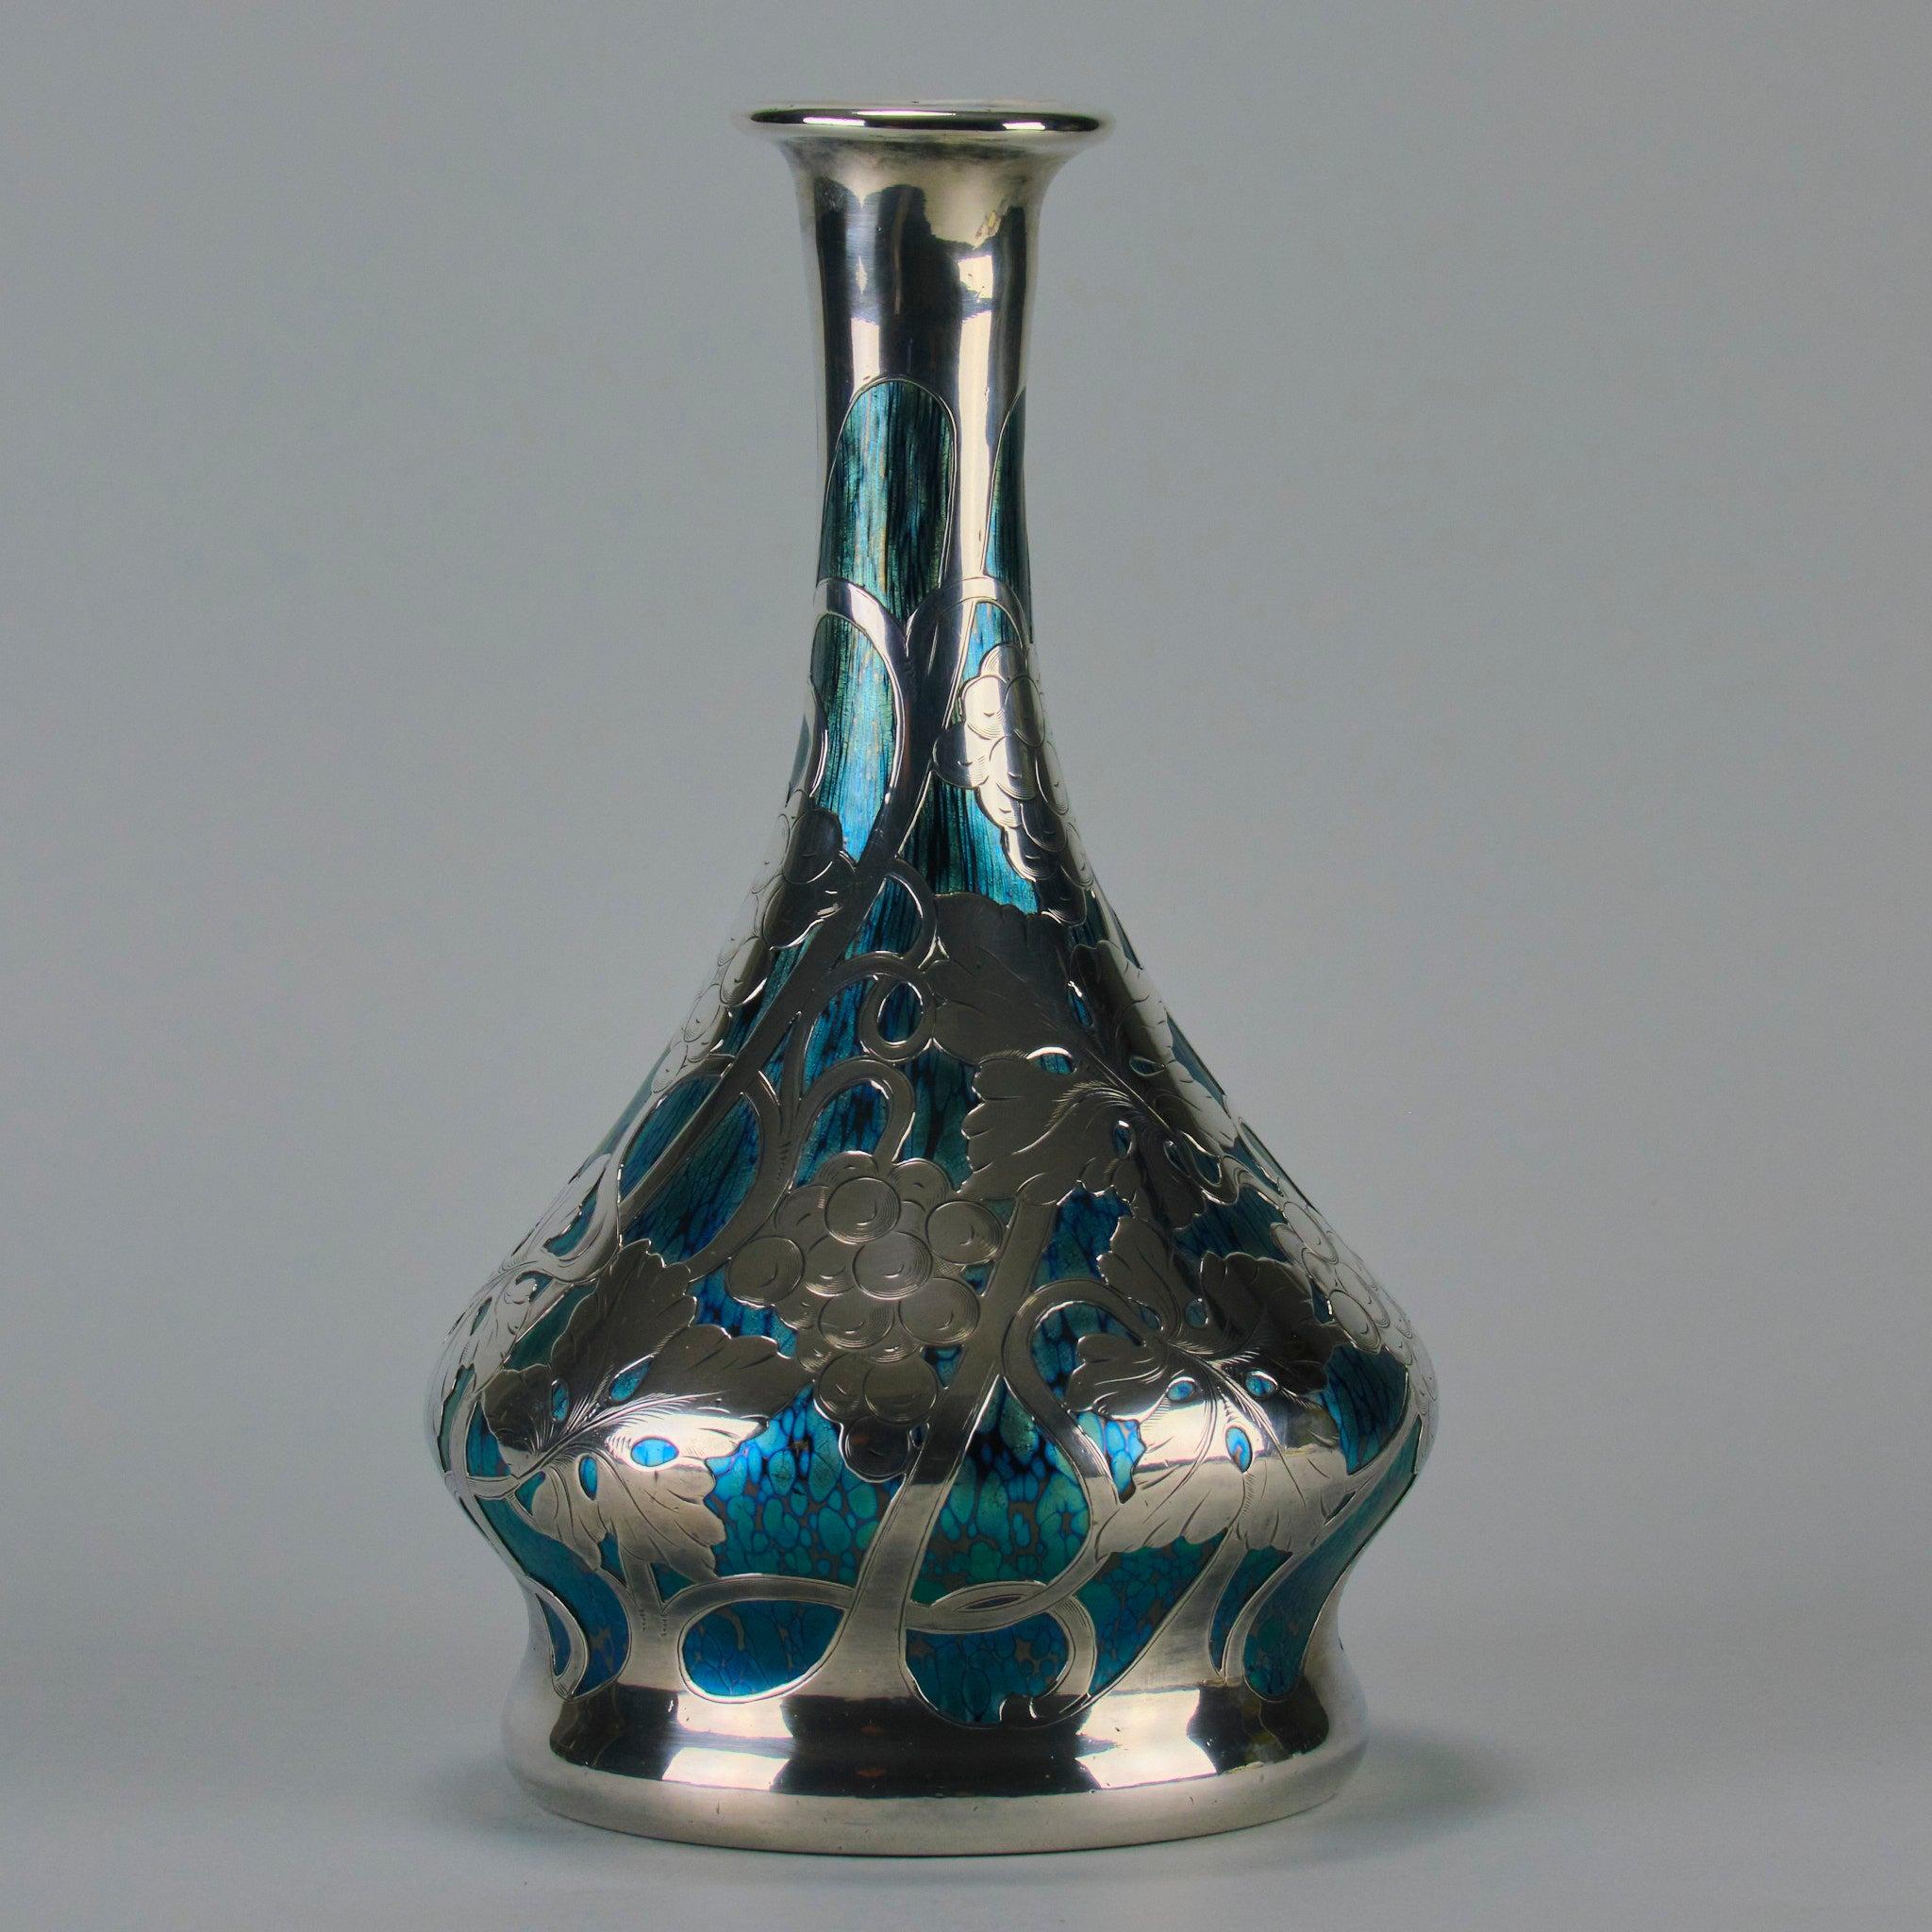 Etched “Cobalt Papillon Vase” Art Nouveau Glass Vase by the Loetz Glassworks